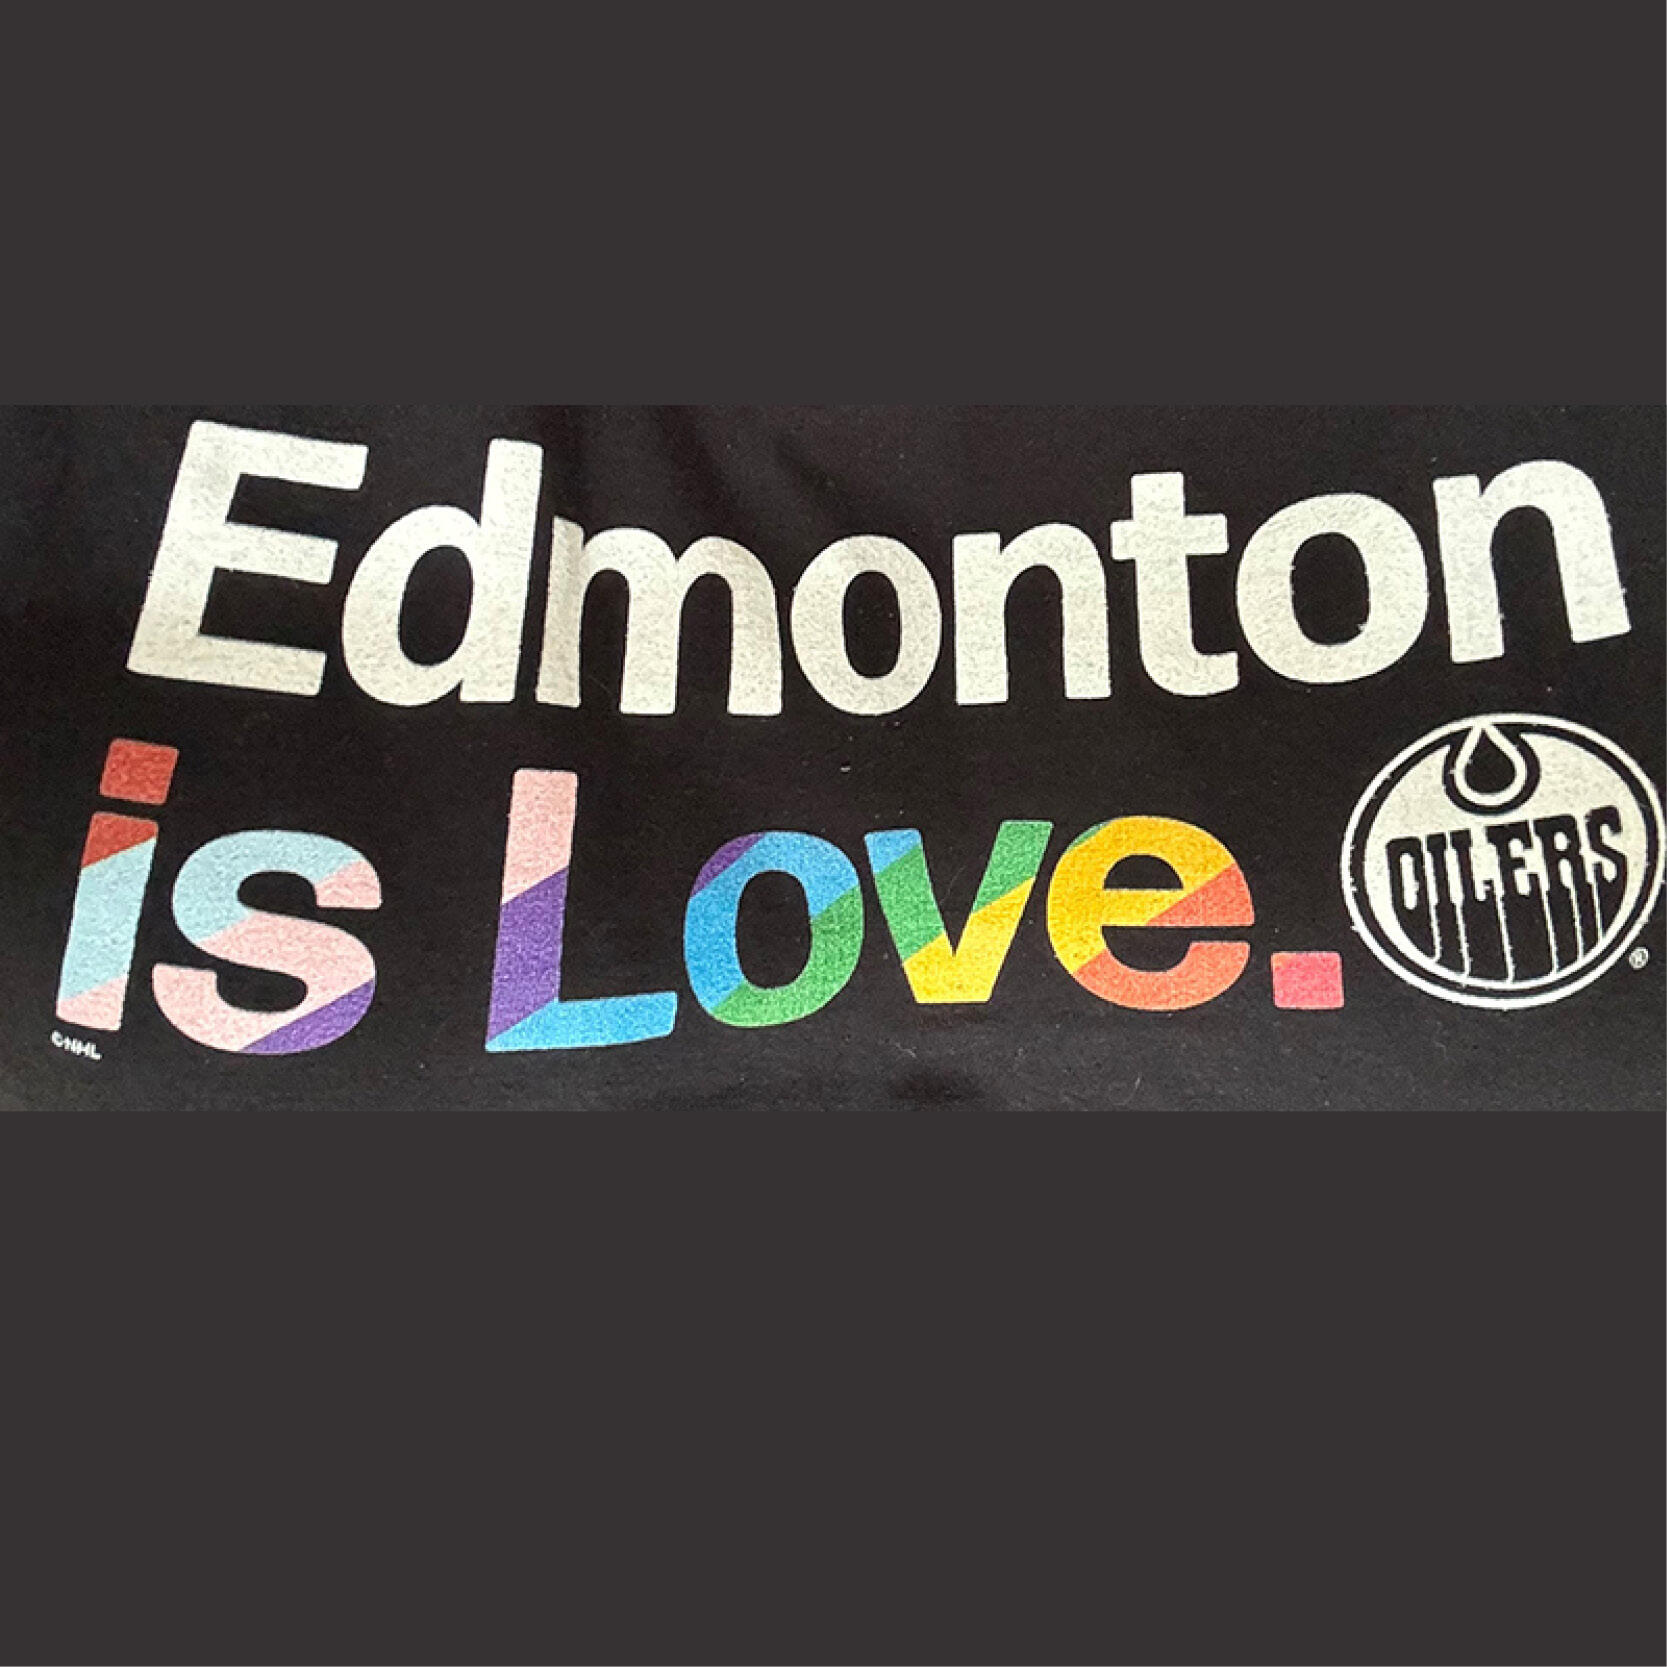 Edmonton is Love Oilers sign